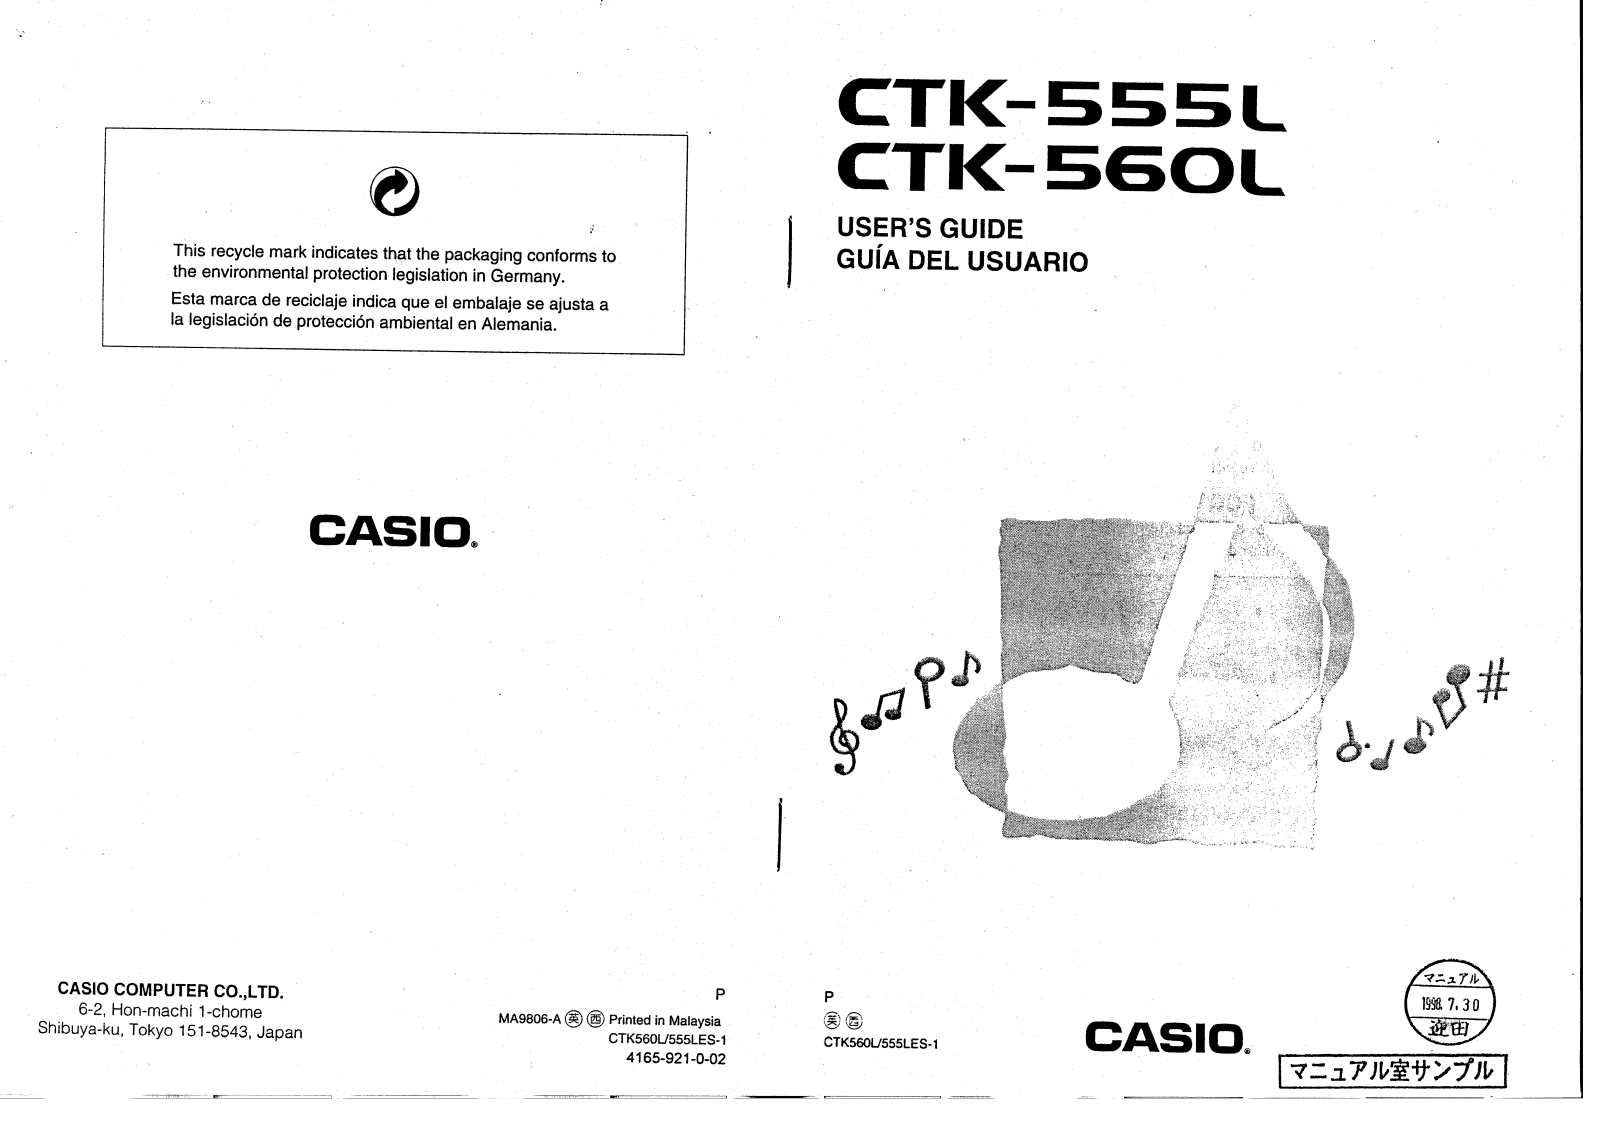 Casio CTK-560L, CTK-555L User Manual